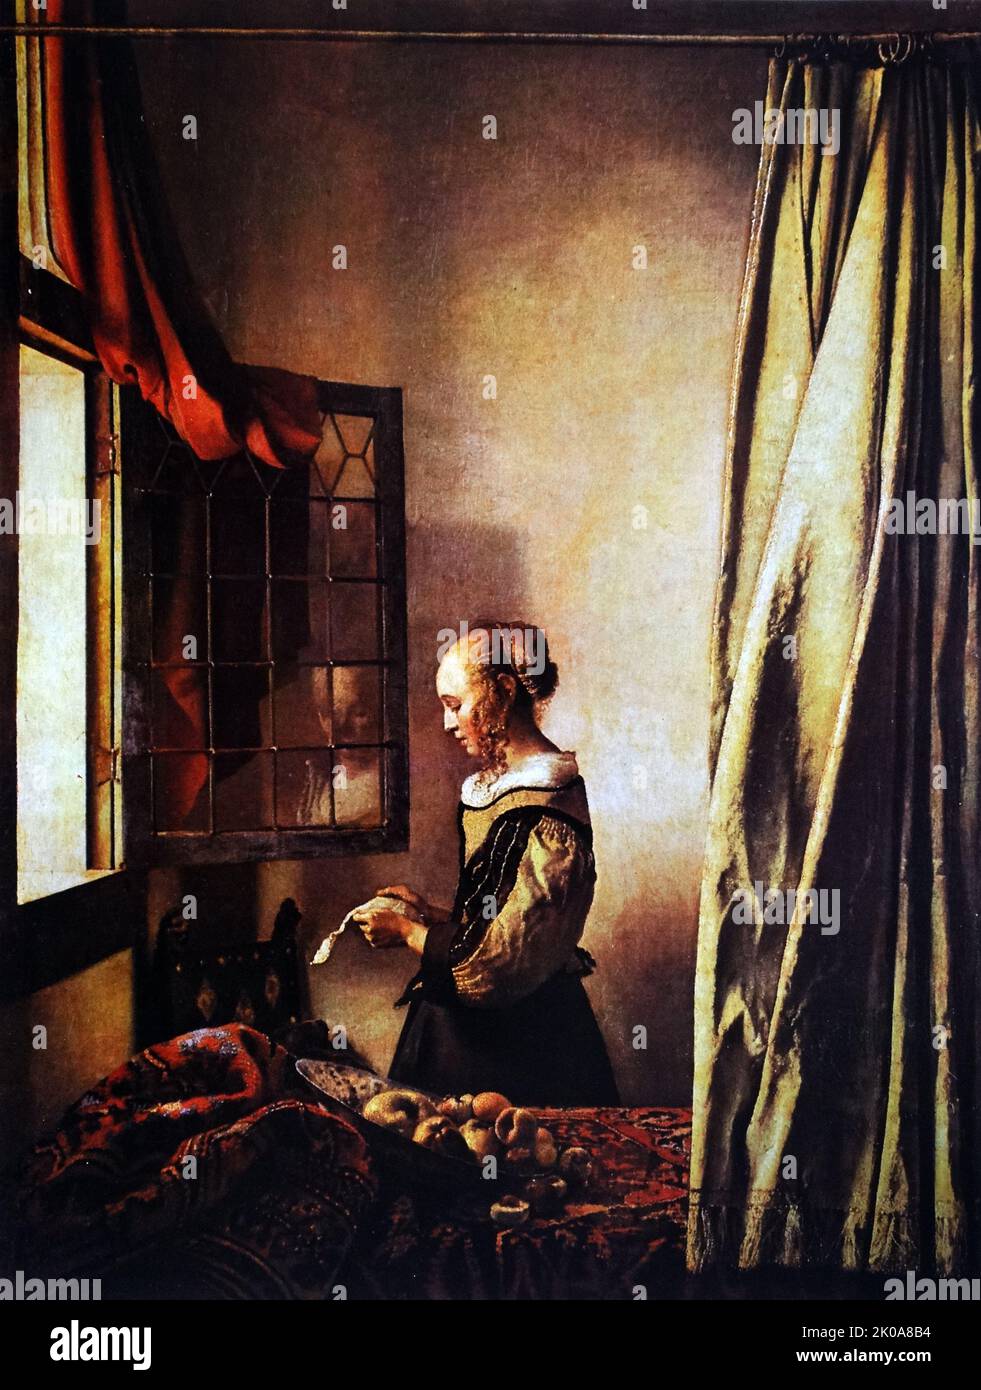 Gemälde des niederländischen Malers Jan Vermeer. Johannes Vermeer (Oktober 1632 - Dezember 1675) war ein niederländischer Barockmaler, der sich auf häusliche Innenräume des bürgerlichen Lebens spezialisierte Stockfoto